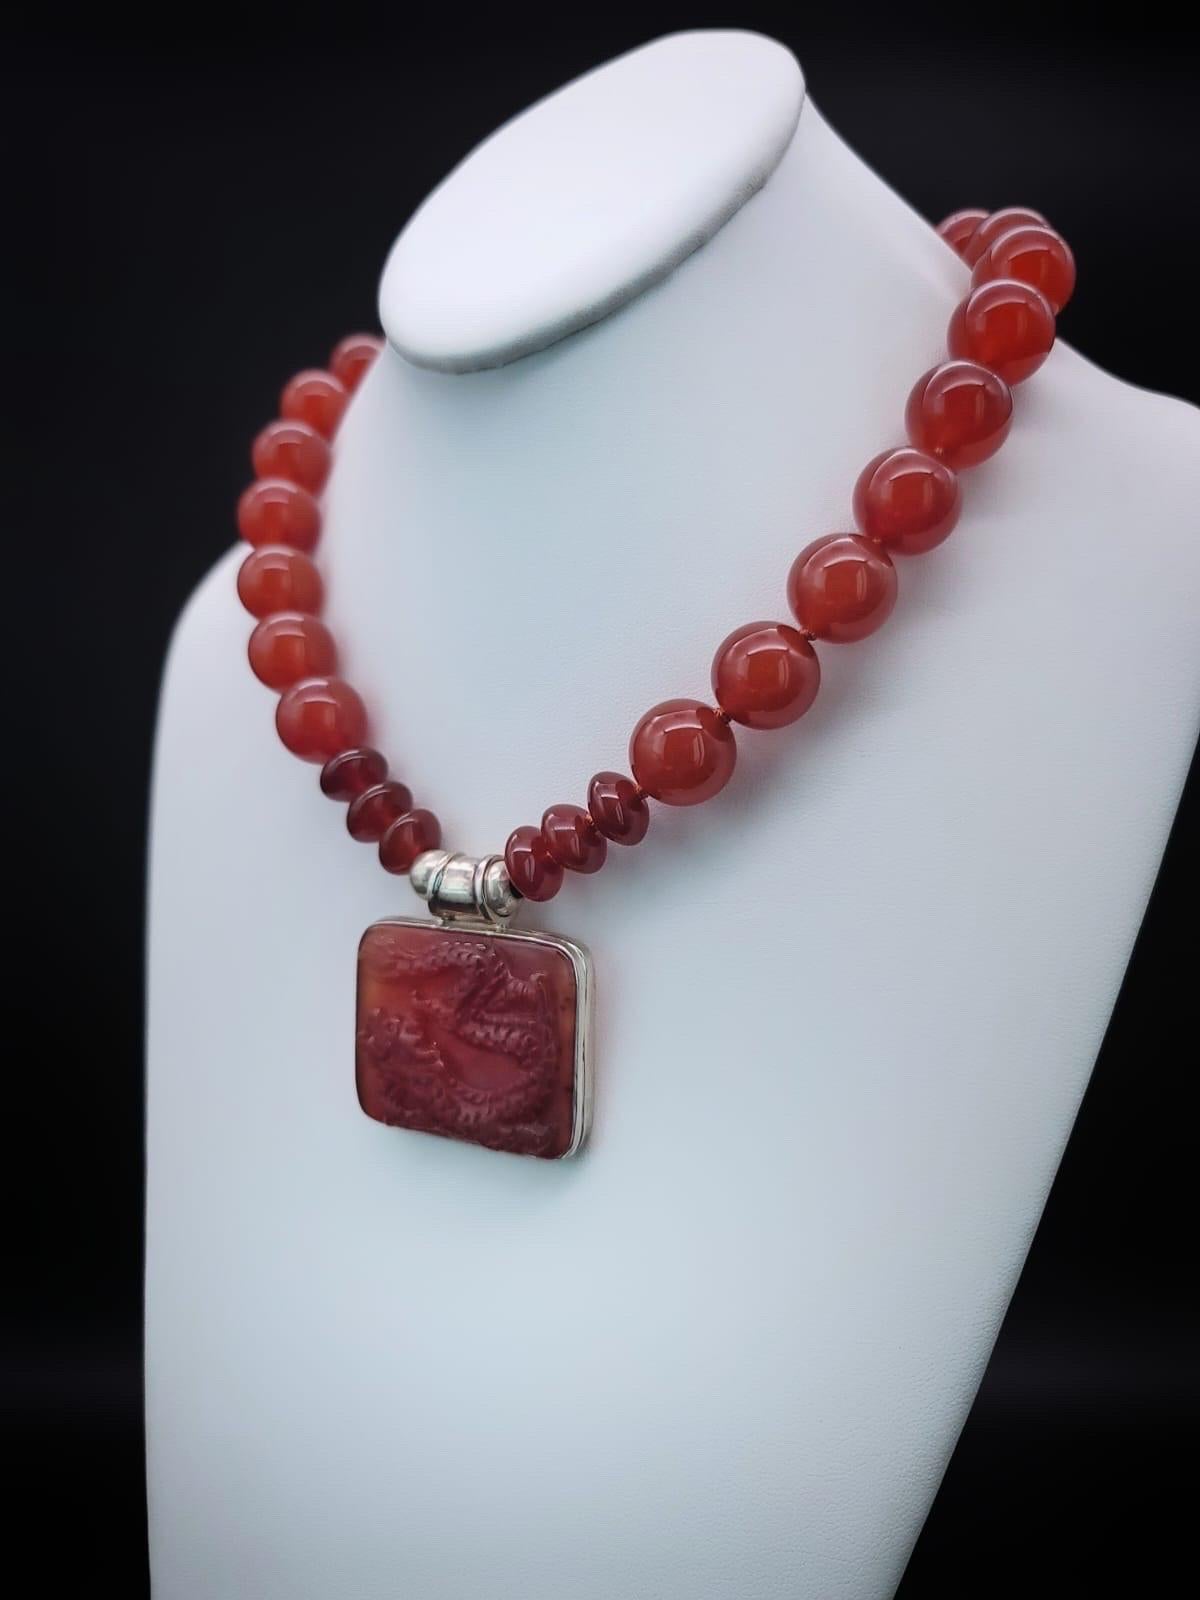 Einzigartig

Reichlich gefärbt 18m.m. Edelstein-Halskette aus Karneol. Der rote Karneol-Anhänger, der an der Halskette hängt, ist ein 2 